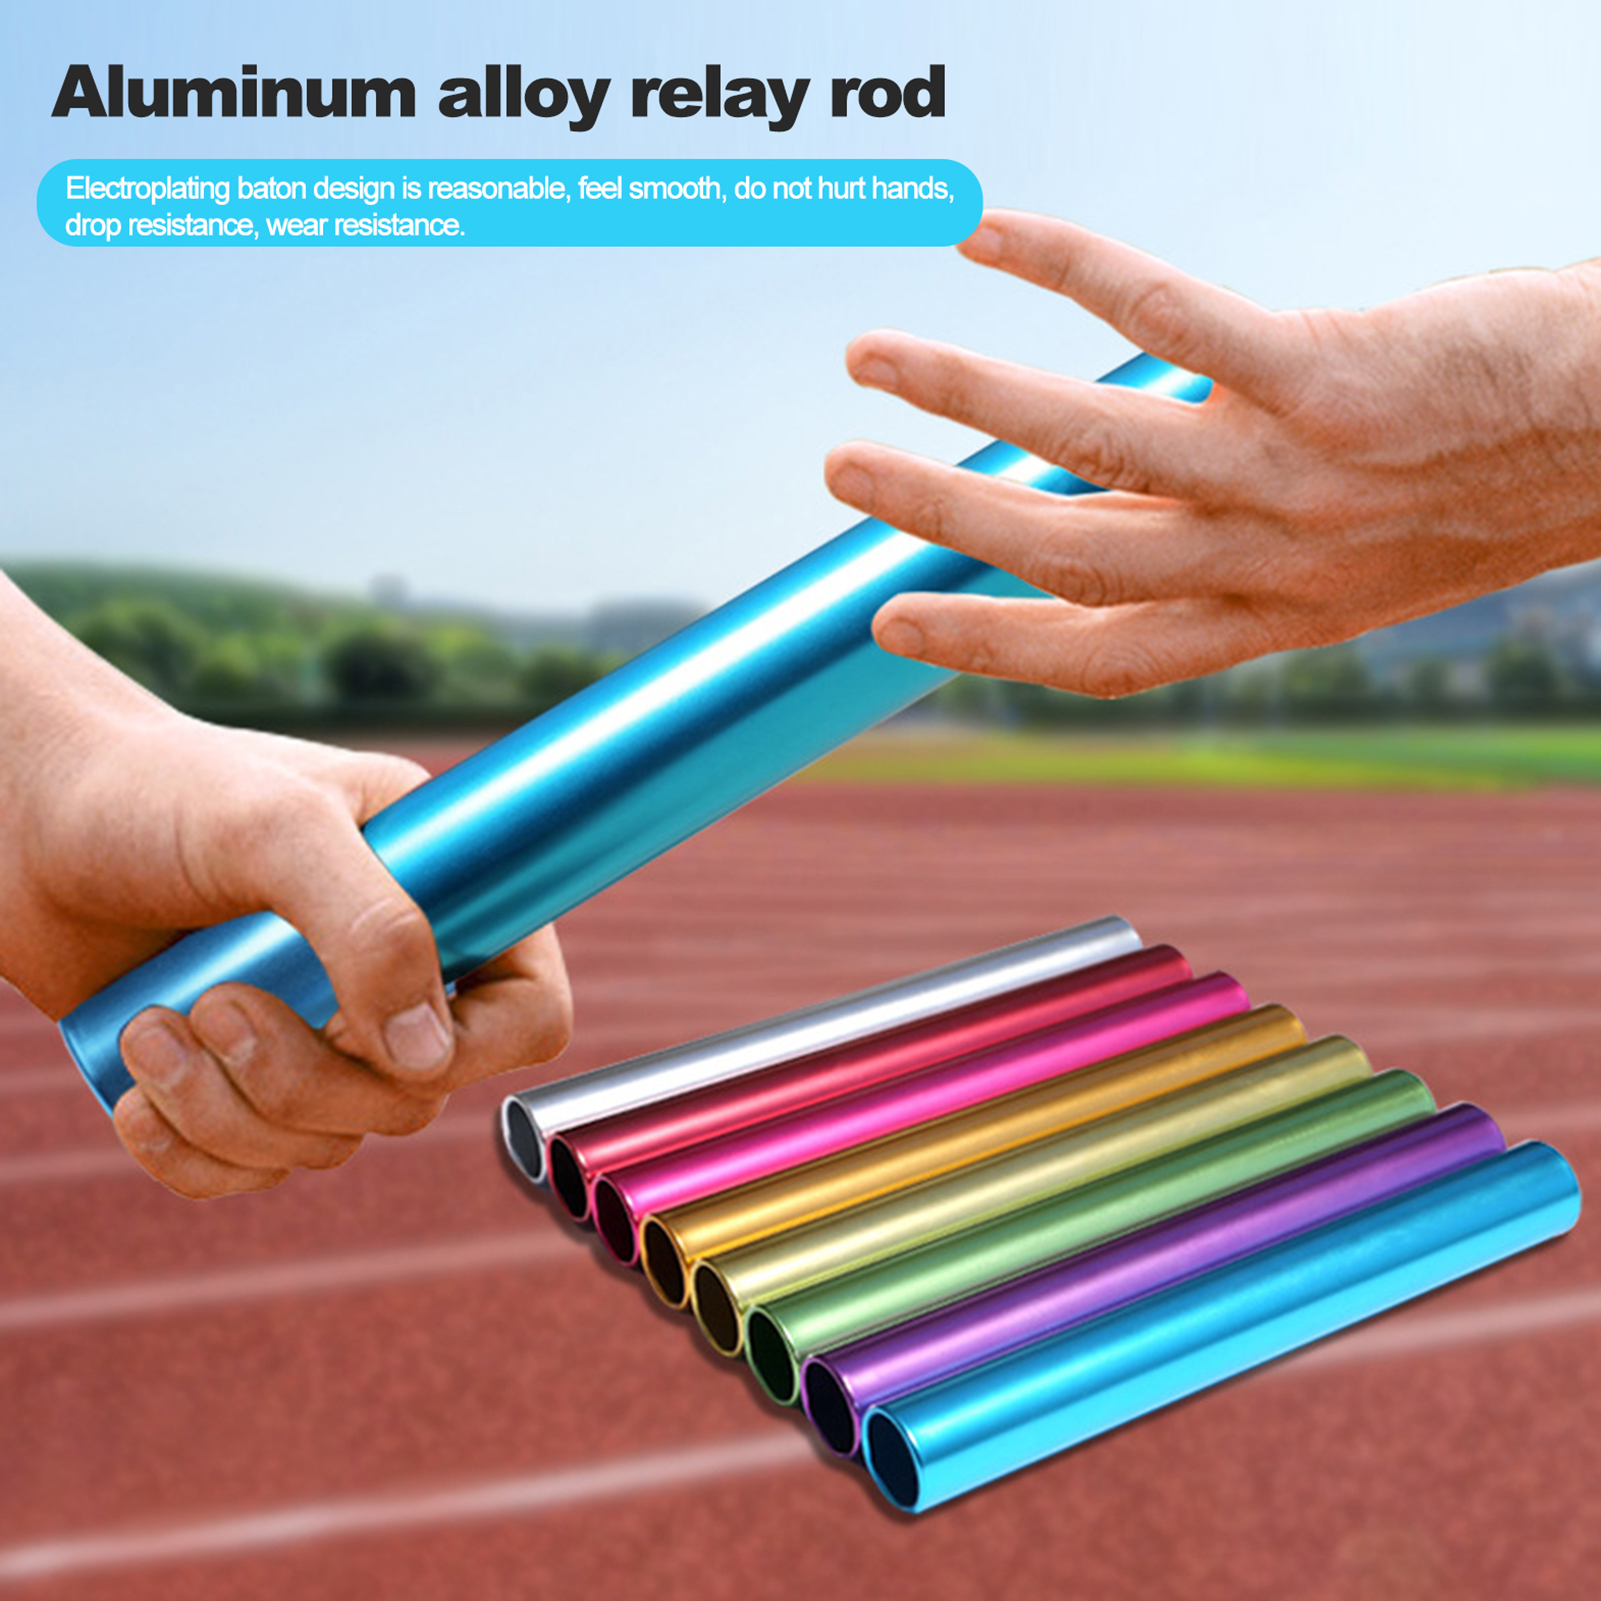 Ralapu Safe Batons High Strength Aluminum Alloy Relay Batons for Team